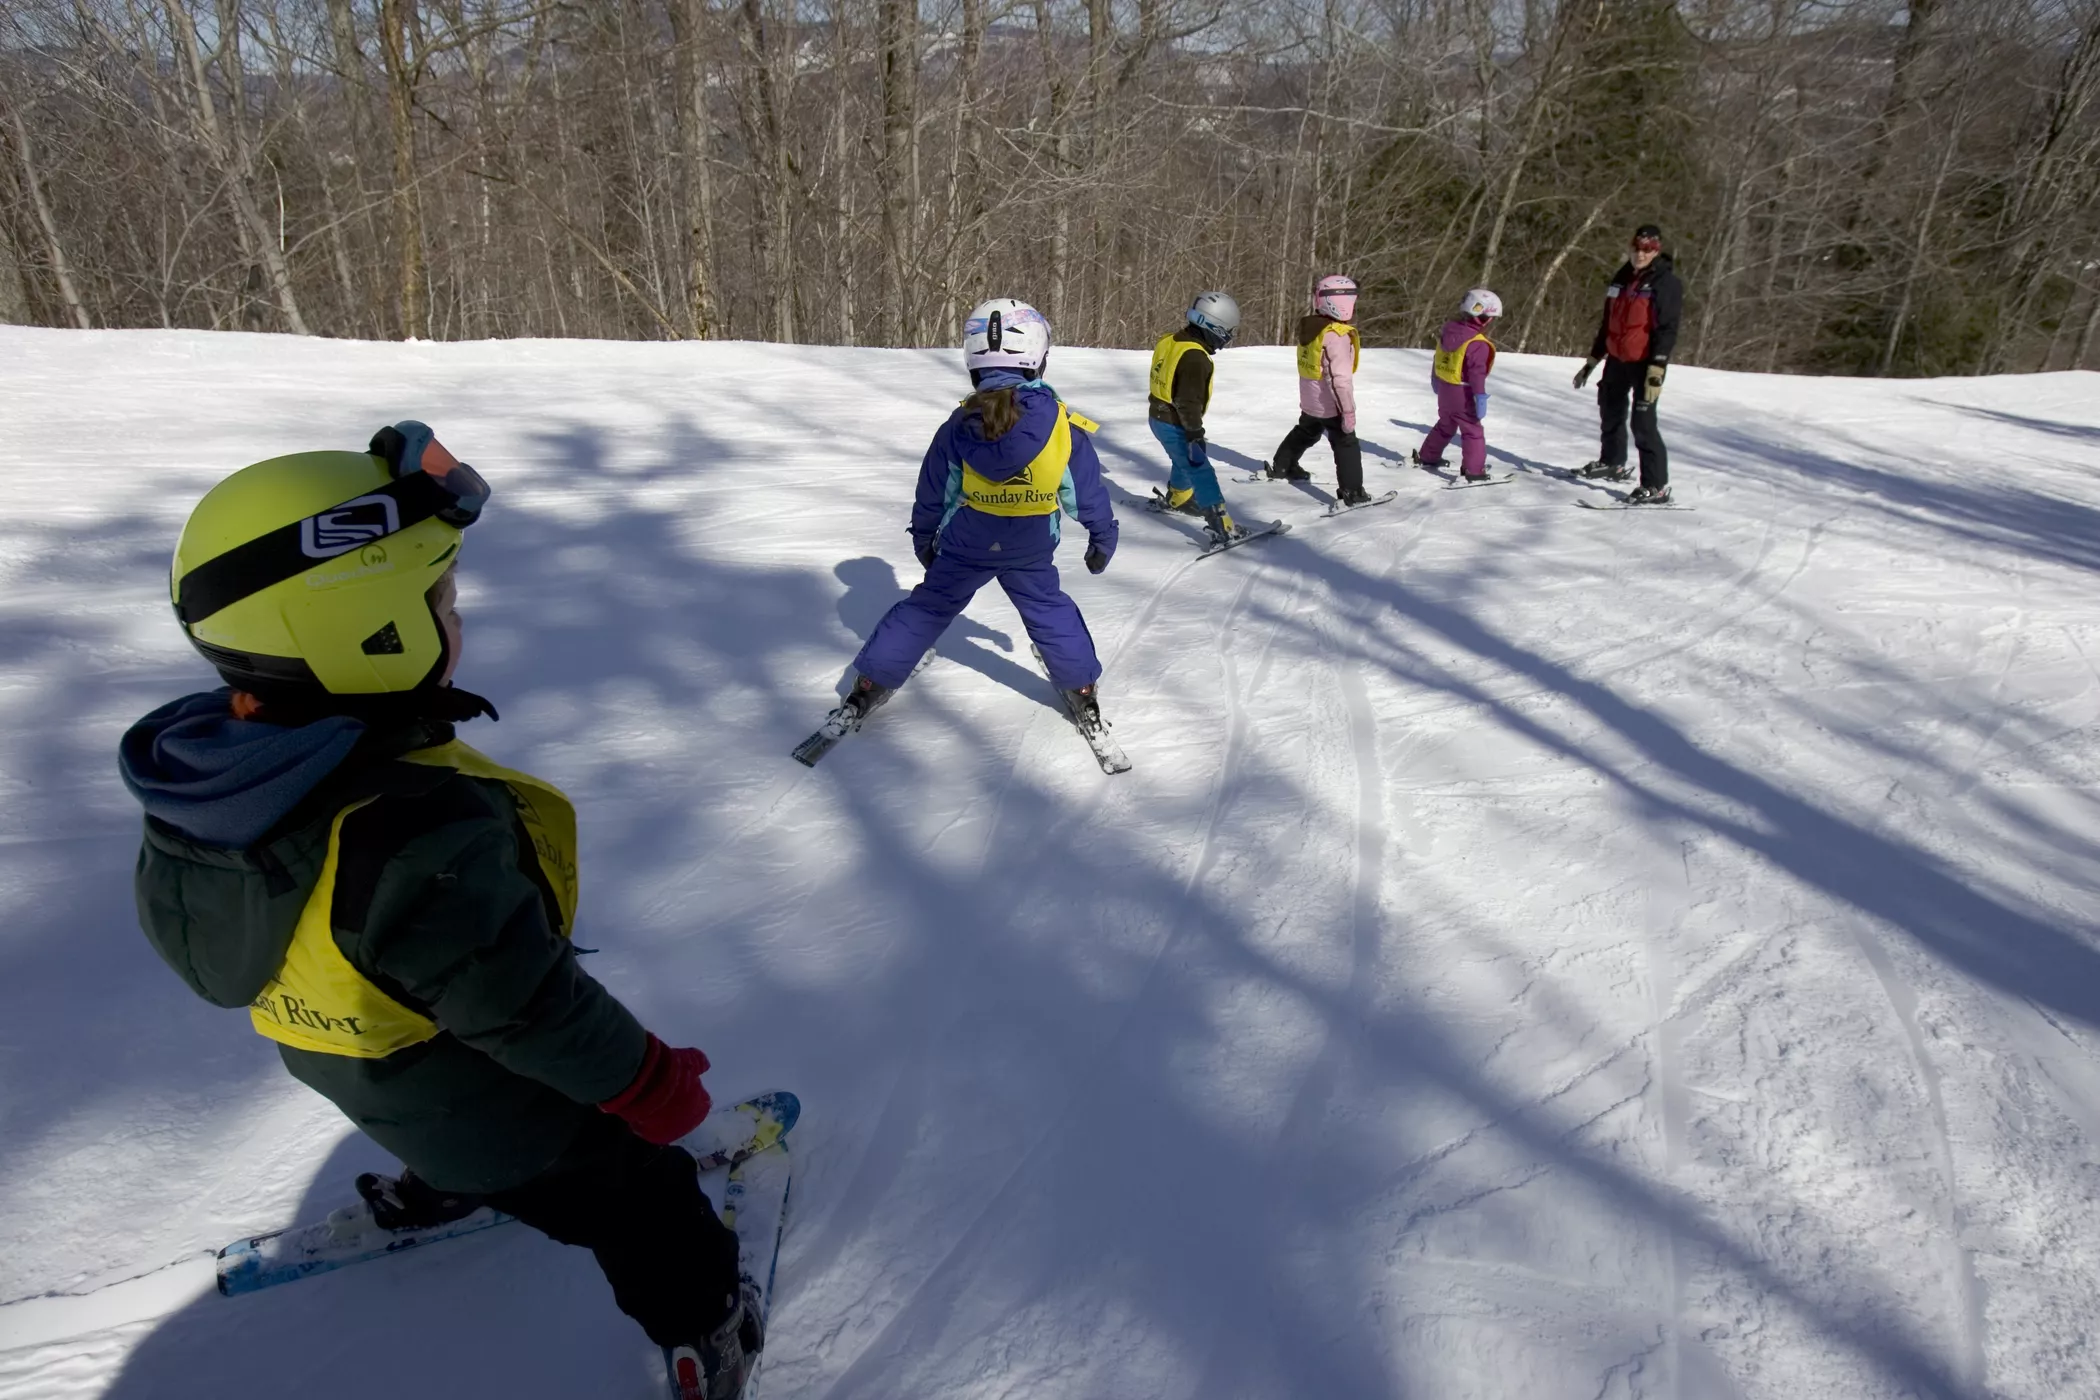 Spree Ski & Snowboard School in Bulgaria, Europe | Snowboarding,Skiing - Rated 1